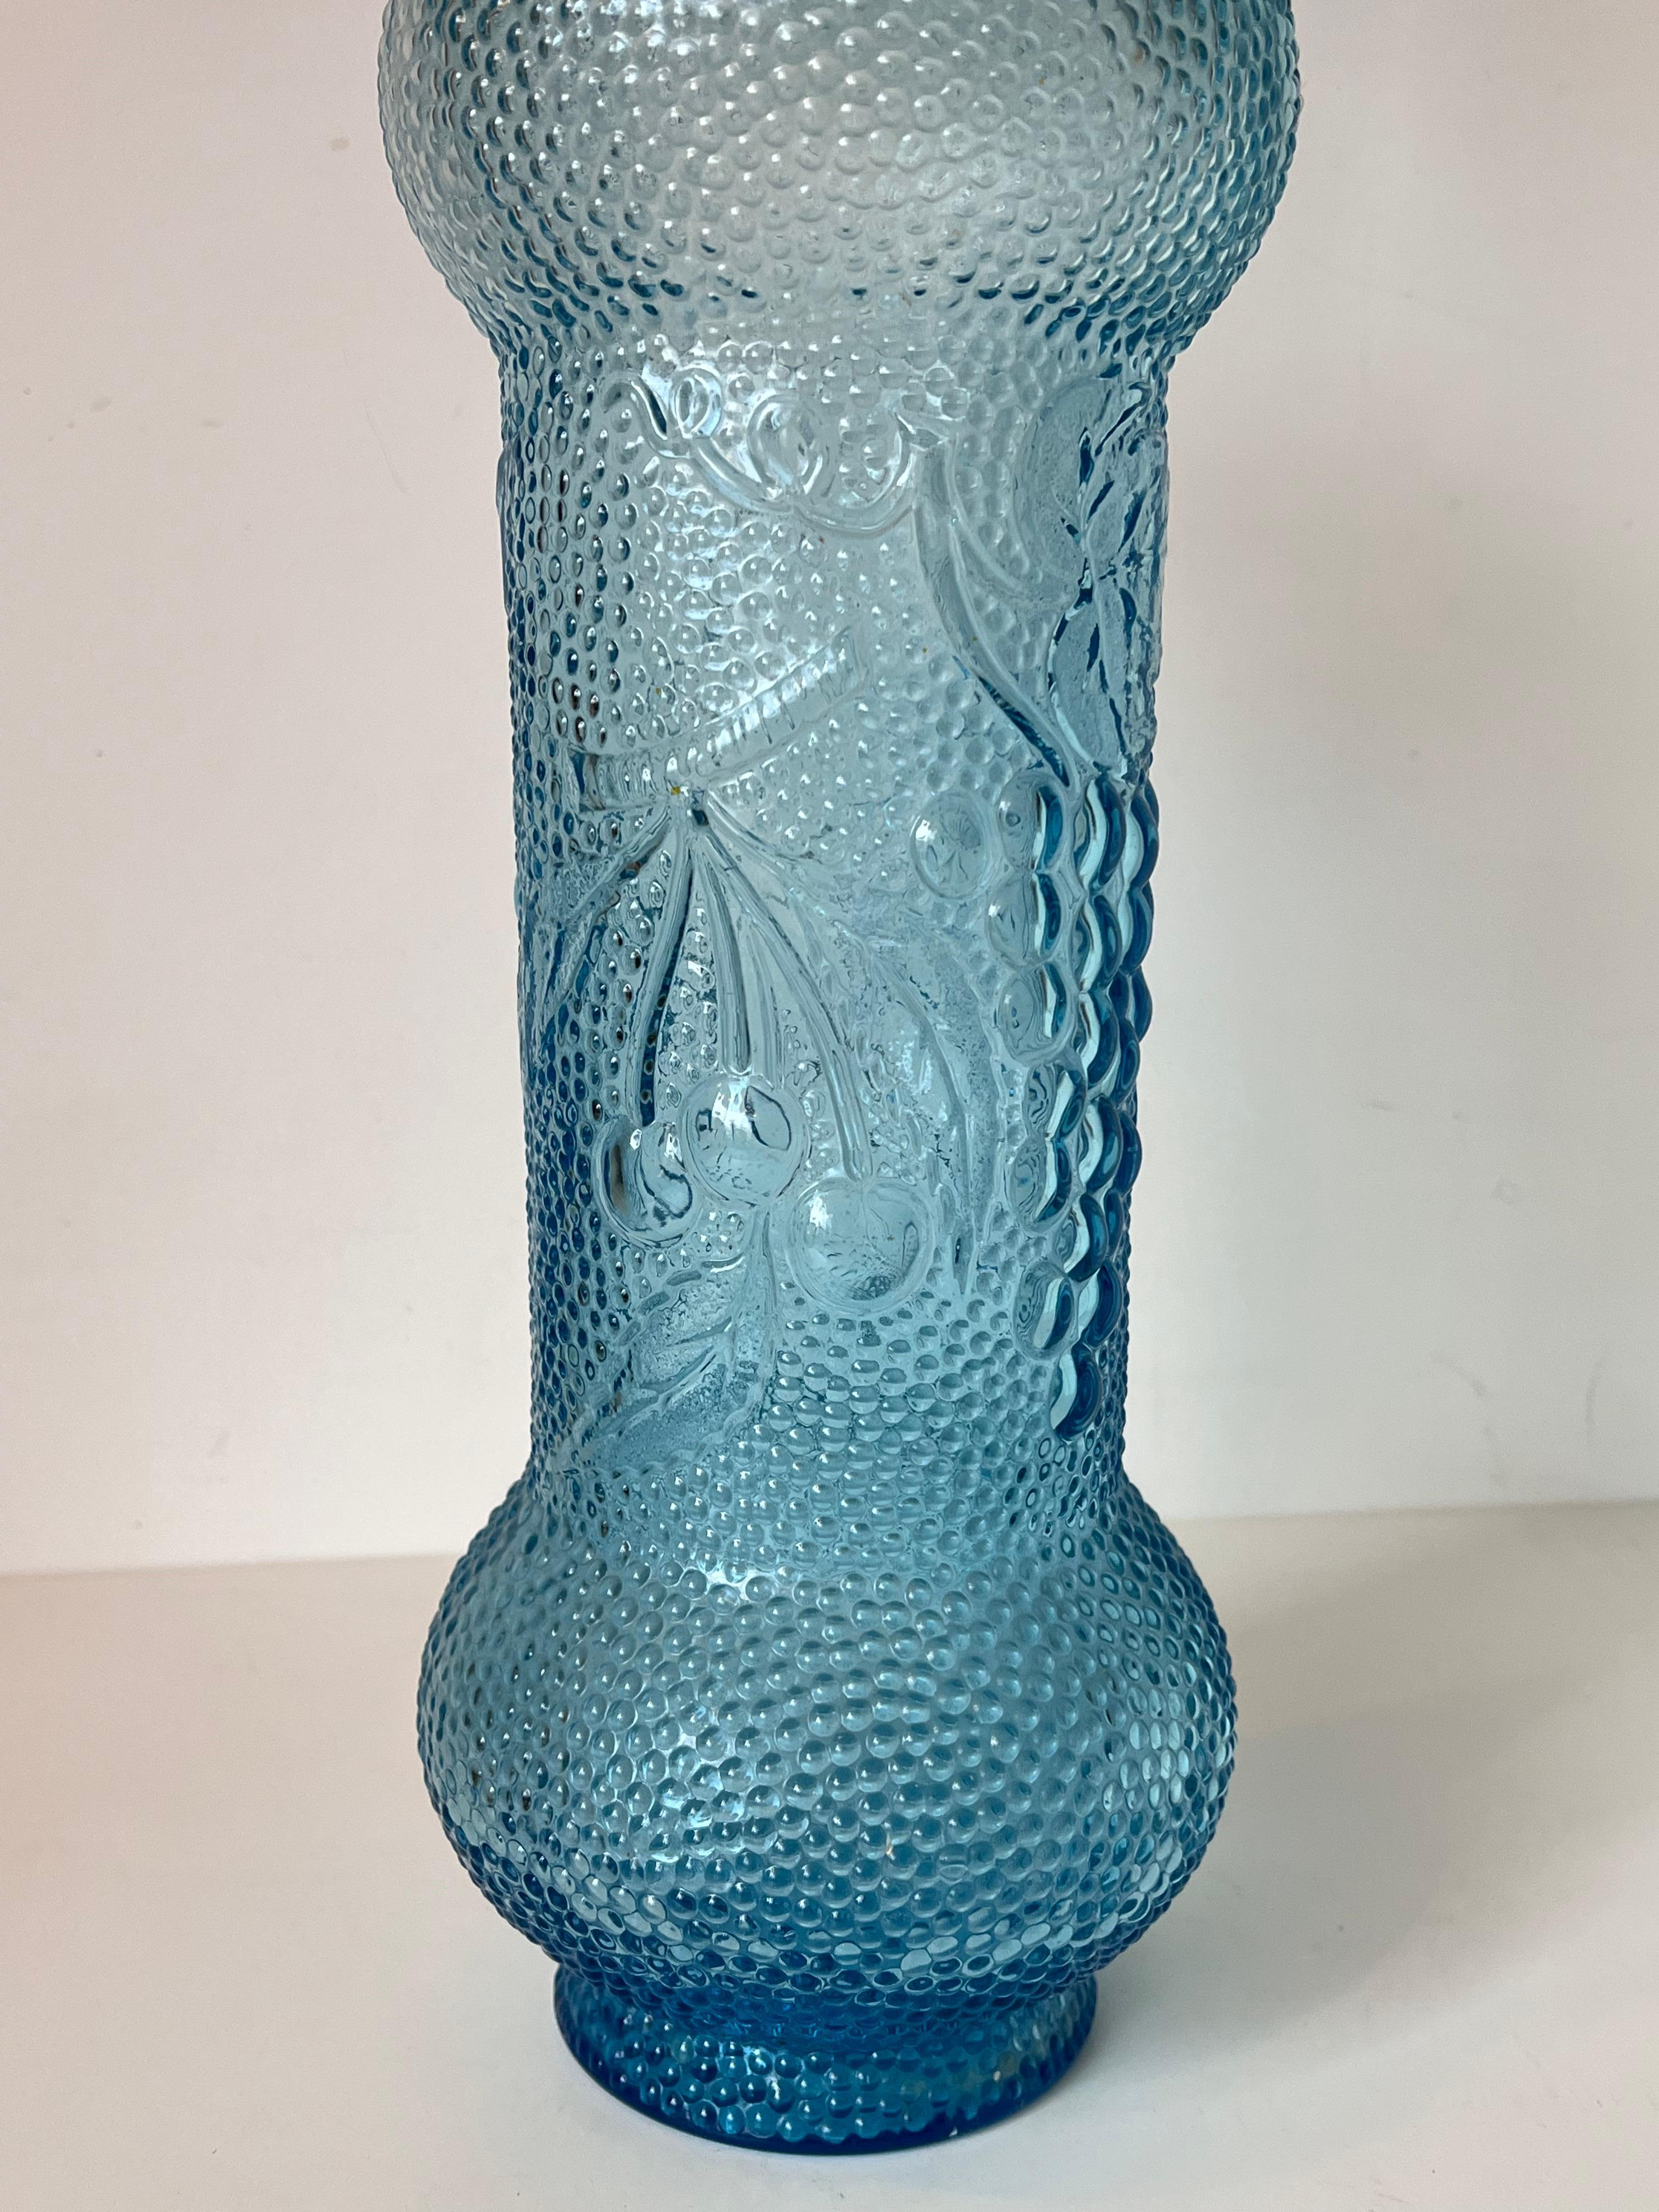 Aquablaue Vintage-Glaskaraffe, genannt Genie-Flasche. 
Aus Empoli, Italien, Mitte des letzten Jahrhunderts. 
Schöne Farbe und originelle Form, mit Früchten auf dem Bauch und tropfenförmigem Stopfen
Großes Format. 
In gutem Zustand!
 